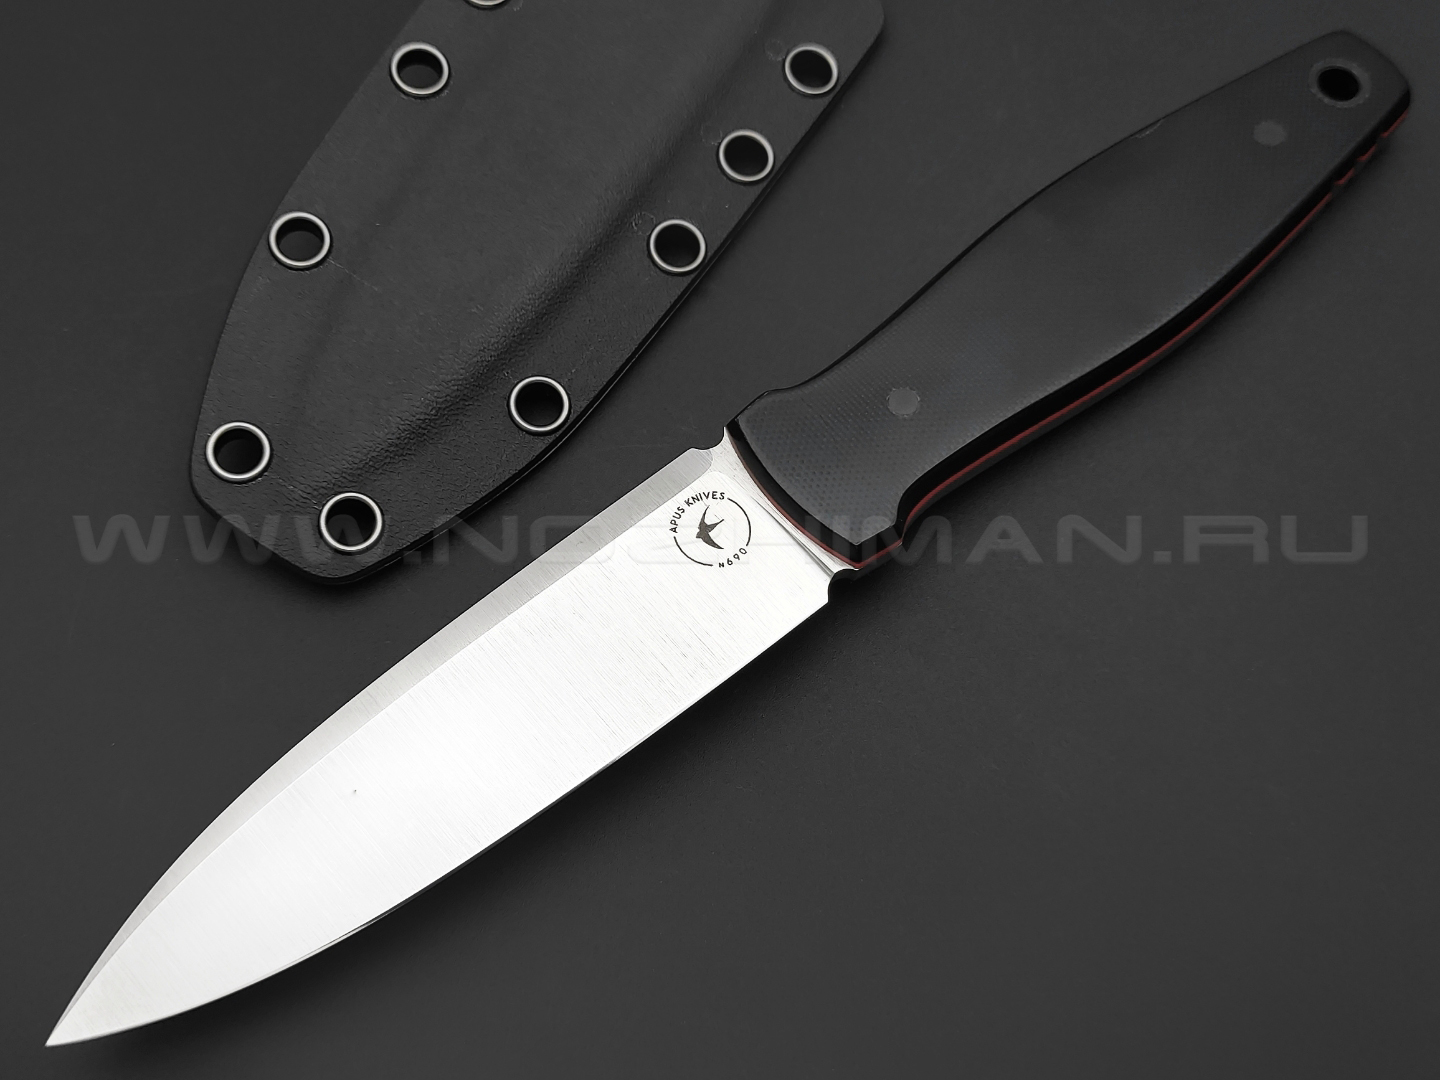 Apus Knives нож Jigger сталь N690, рукоять G10 black orange